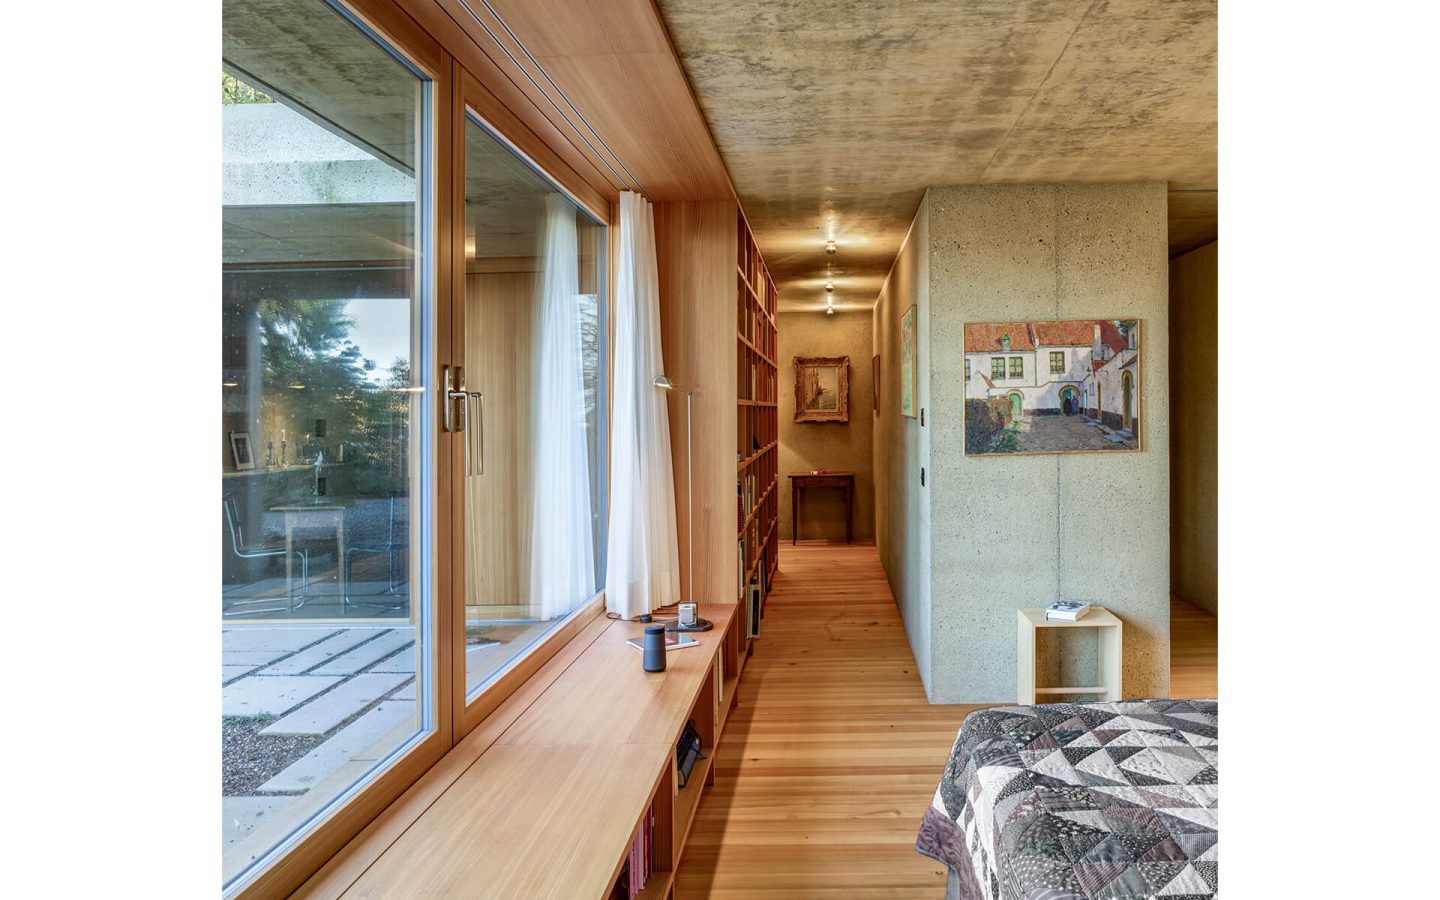 Ein Holzregal ist im Schlafbereich Stauraummöbel und Sitzbank und wird im Wohnbereich zum funktionalen Raumteiler.